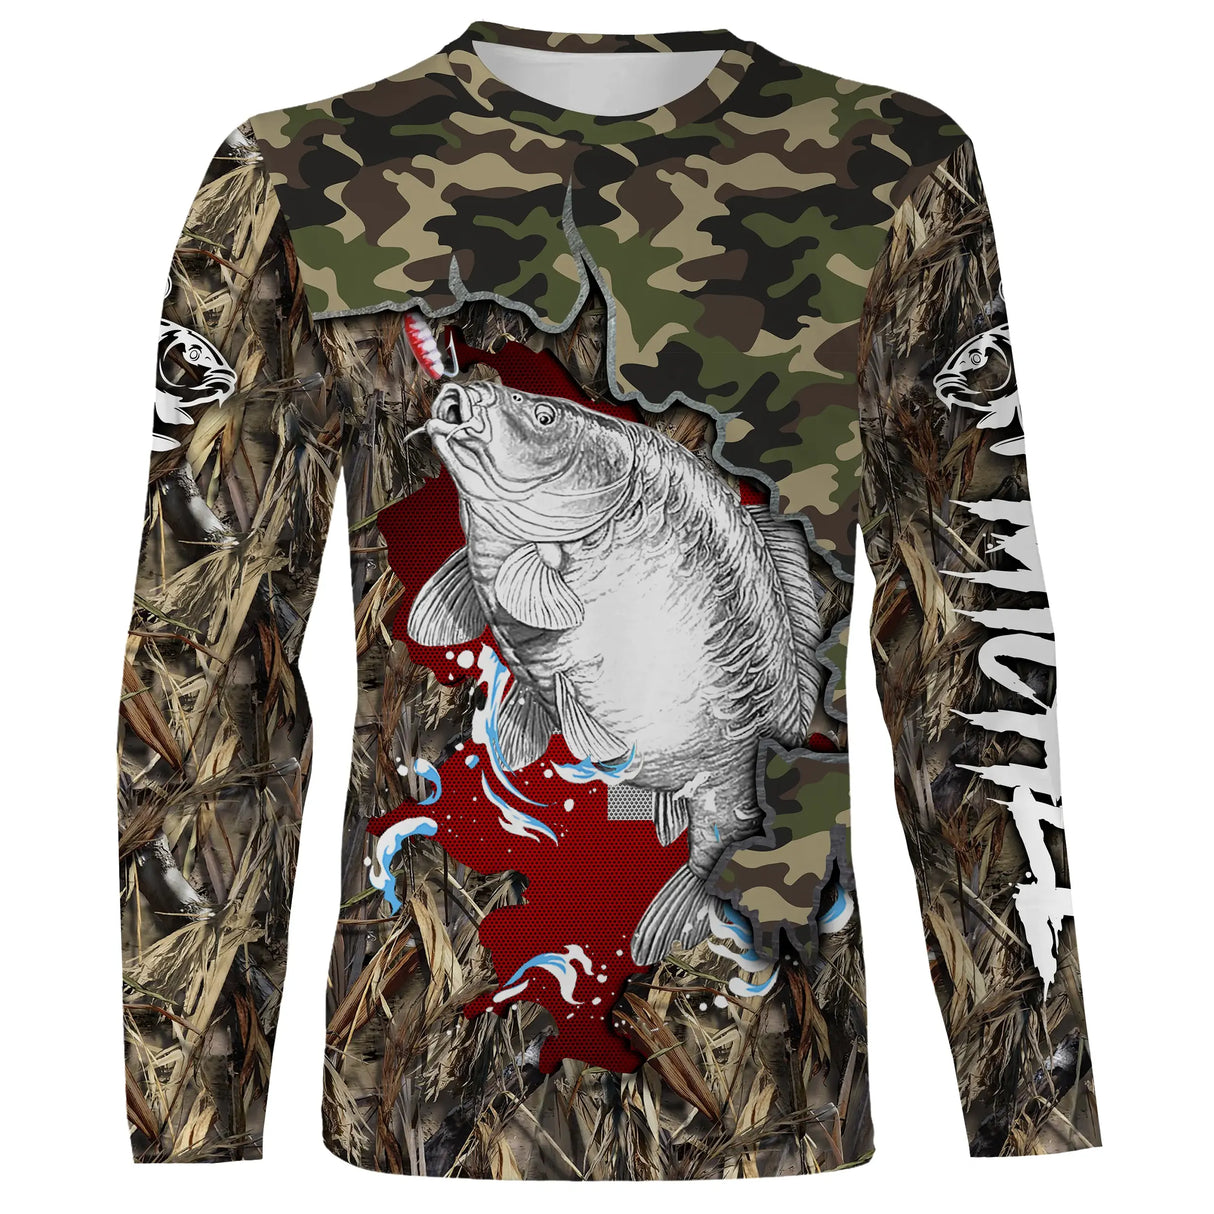 T-Shirt de Pêche à la Carpe en Camouflage - Style Unique pour Été et Hiver, Respirant et Éco-Conçu - CT19072215 T-shirt All Over Manches Longues Unisexe